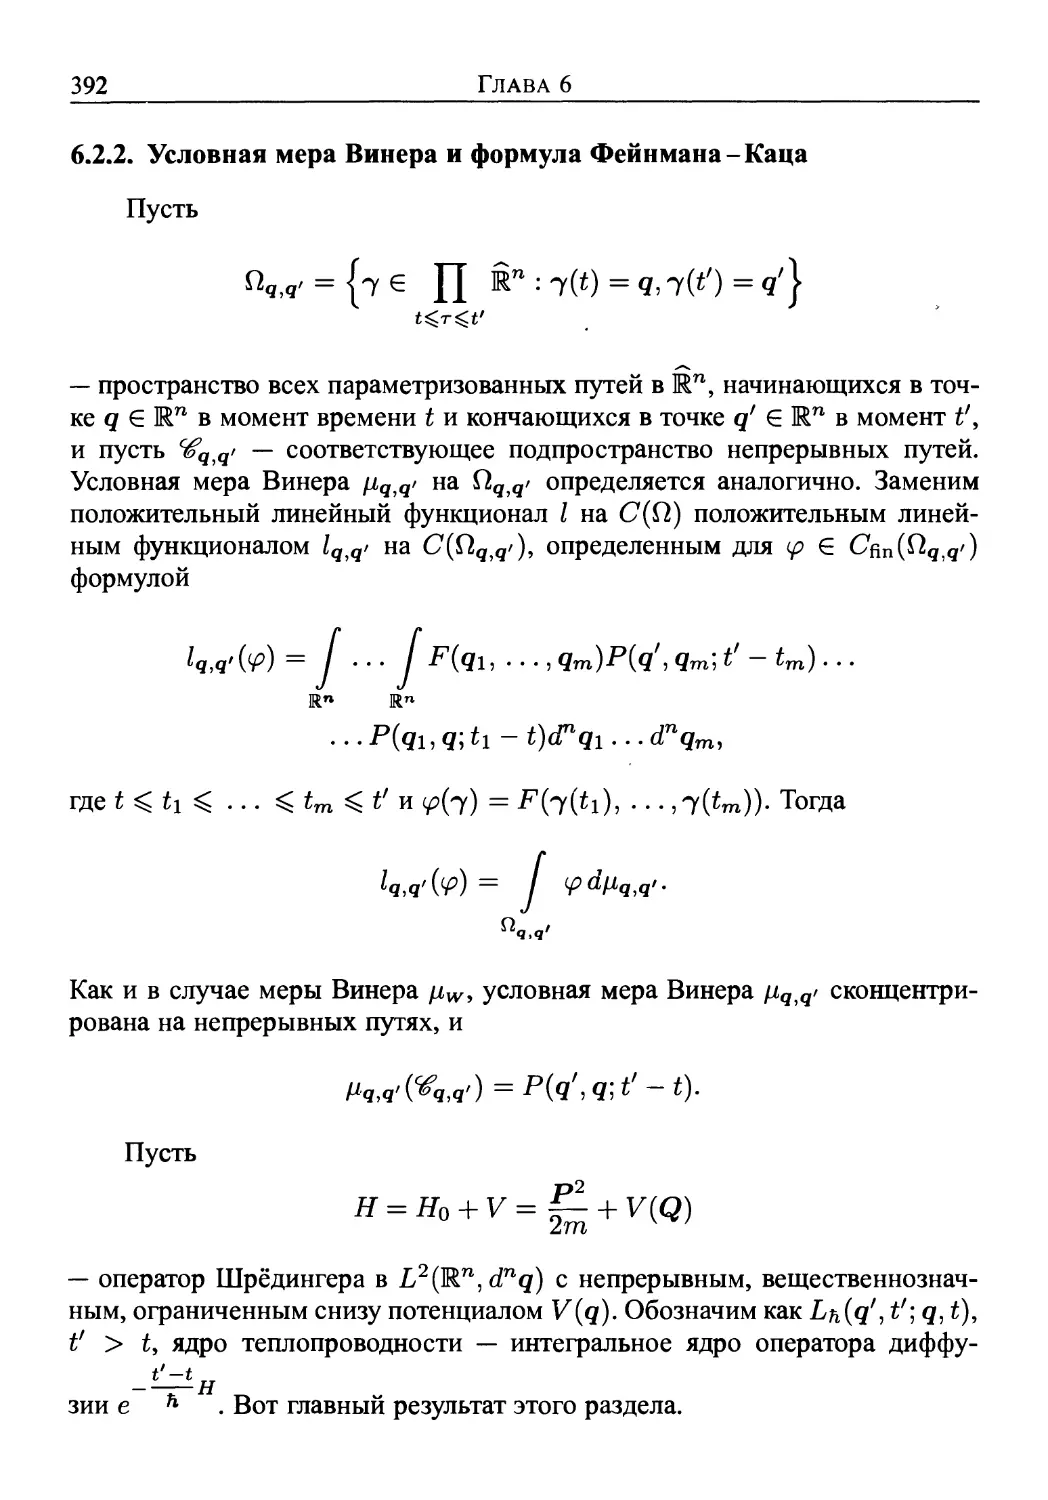 6.2.2. Условная мера Винера и формула Фейнмана-Каца